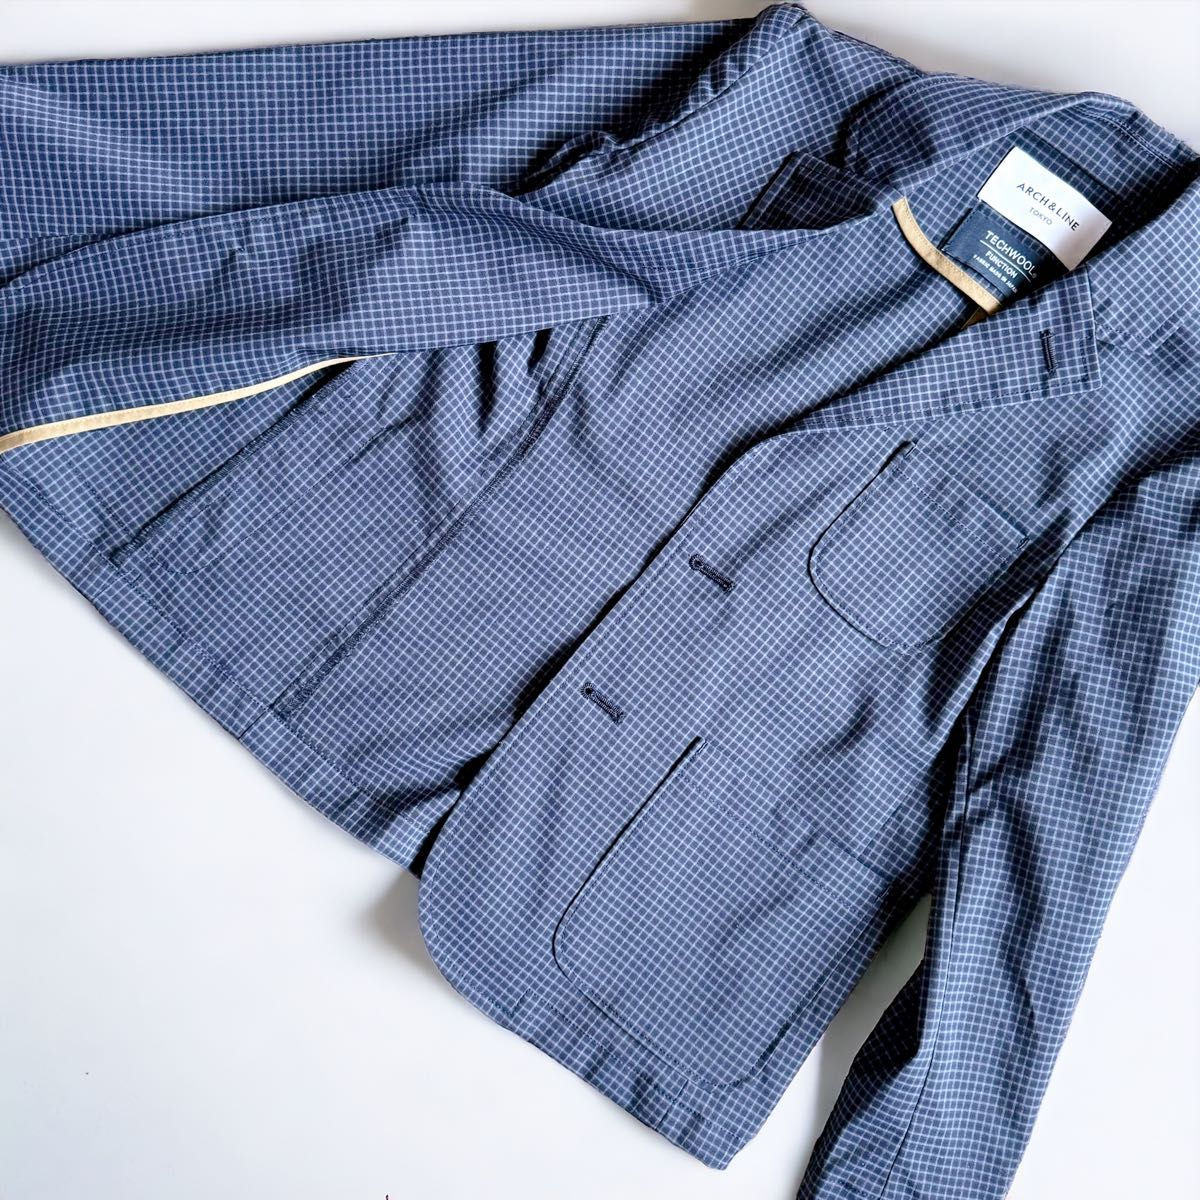 ARCH & LINE スーツ 120㎝ 卒園式 入学式　男の子  フォーマル